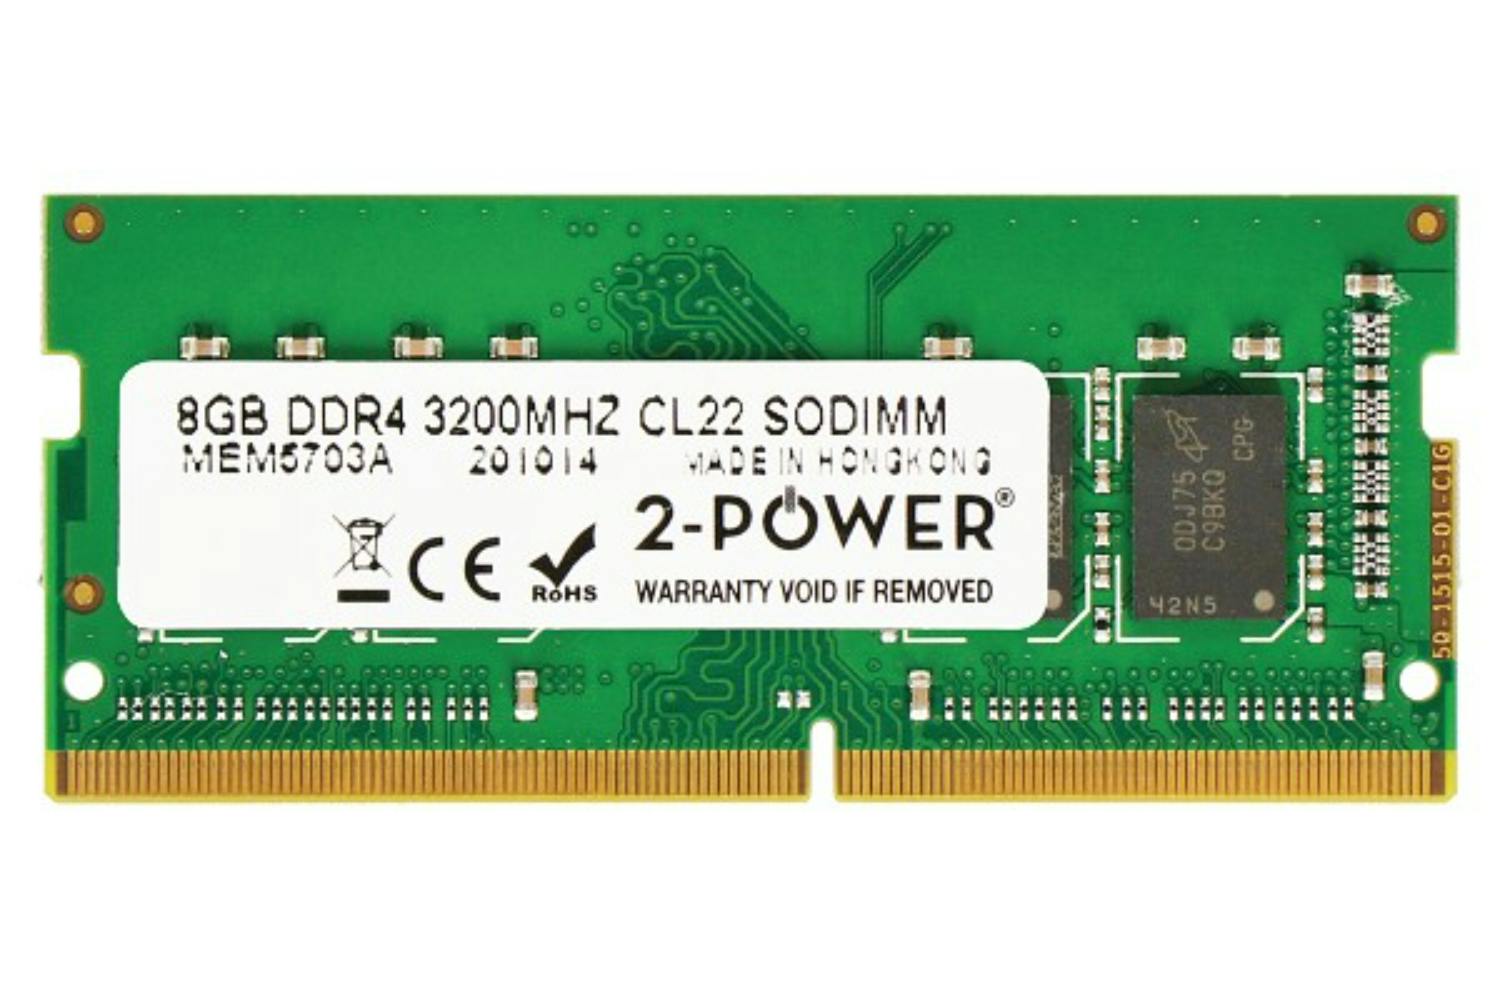 2-Power 8GB DDR4 3200MHz CL22 SODIMM Memory Module